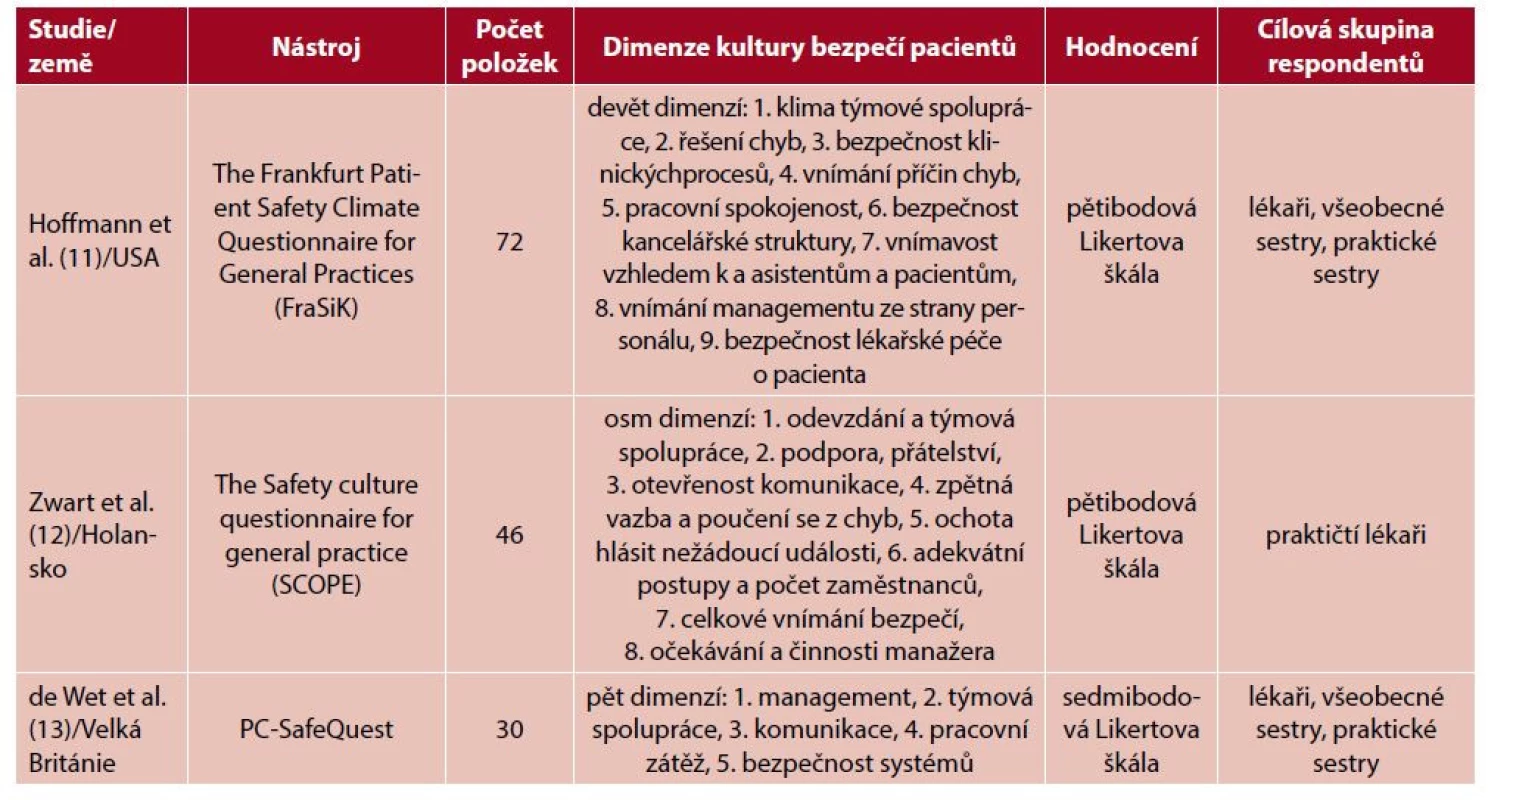 Přehled hodnotících nástrojů k hodnocení kultury bezpečí pacientů v primární ambulantní péči (ordinace PL)